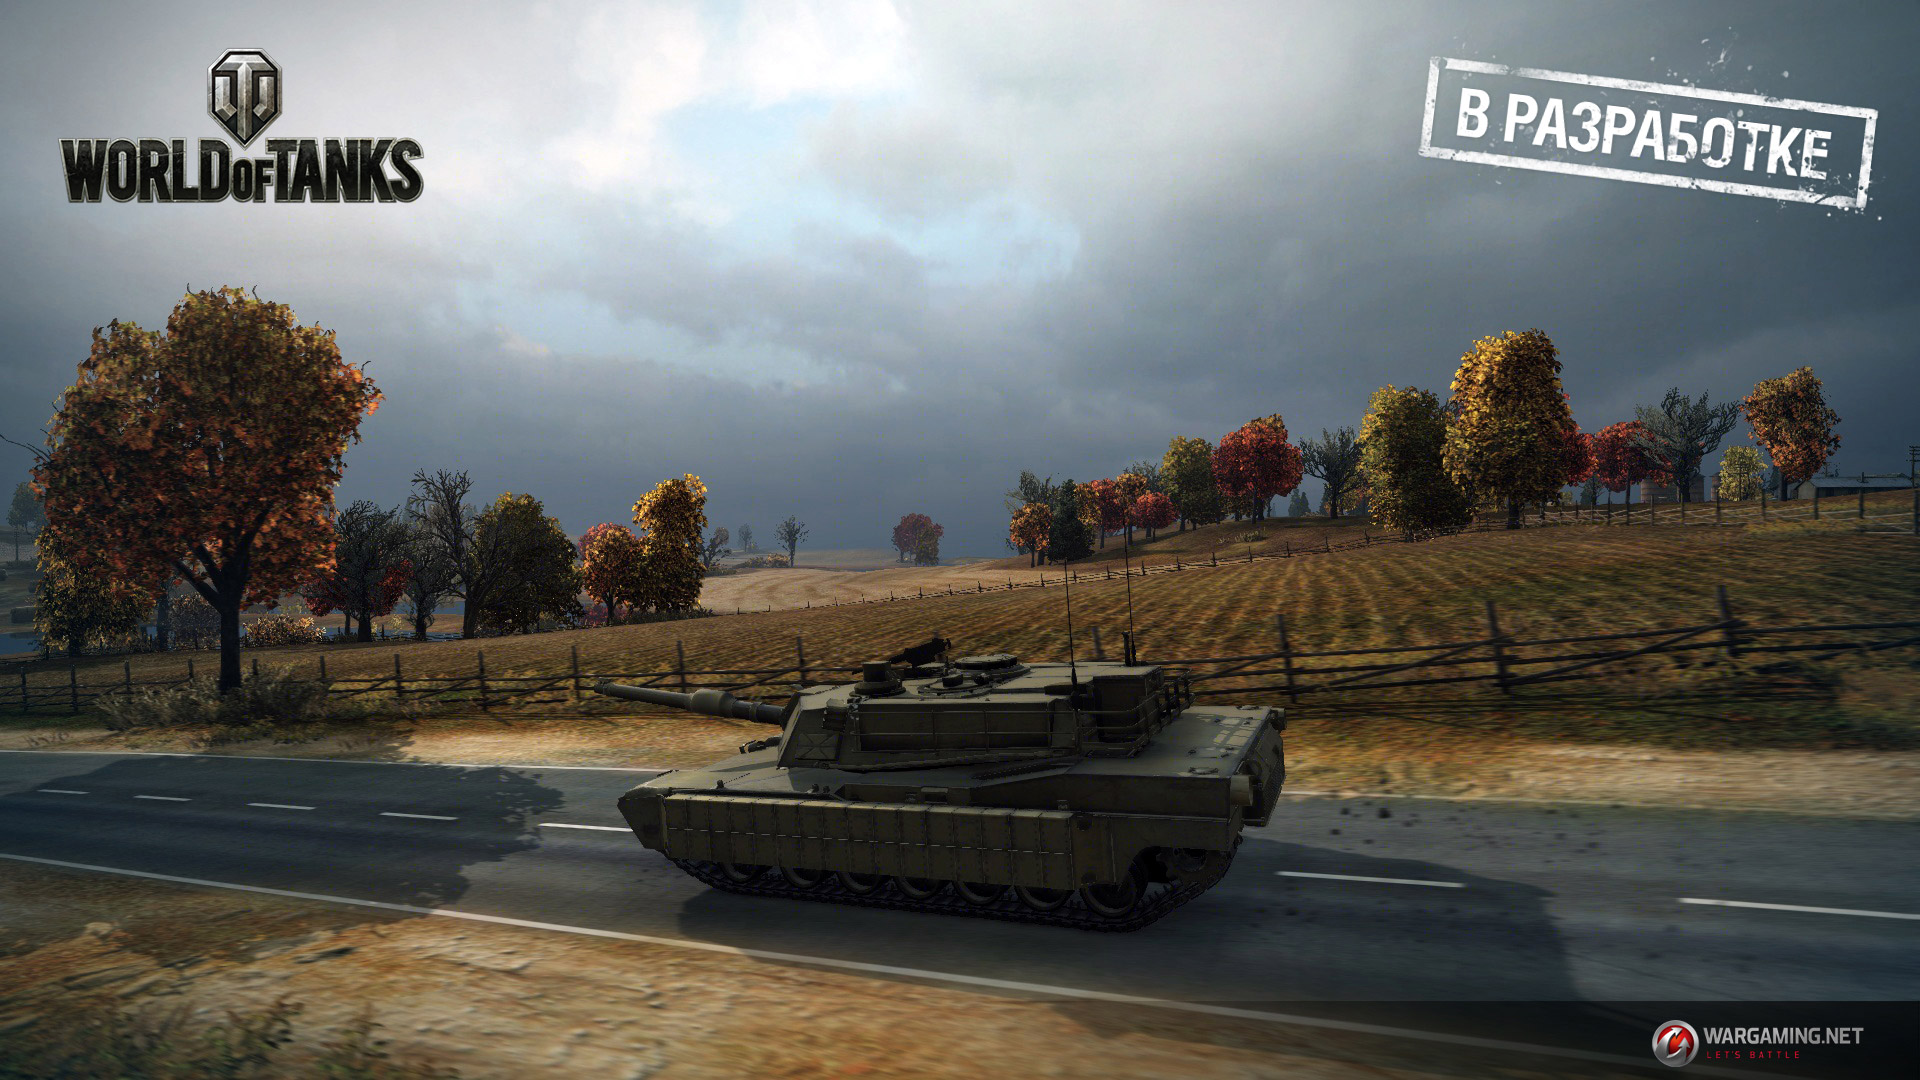 Стали известны дата релиза и особенности геймплея World of Tanks 2.0